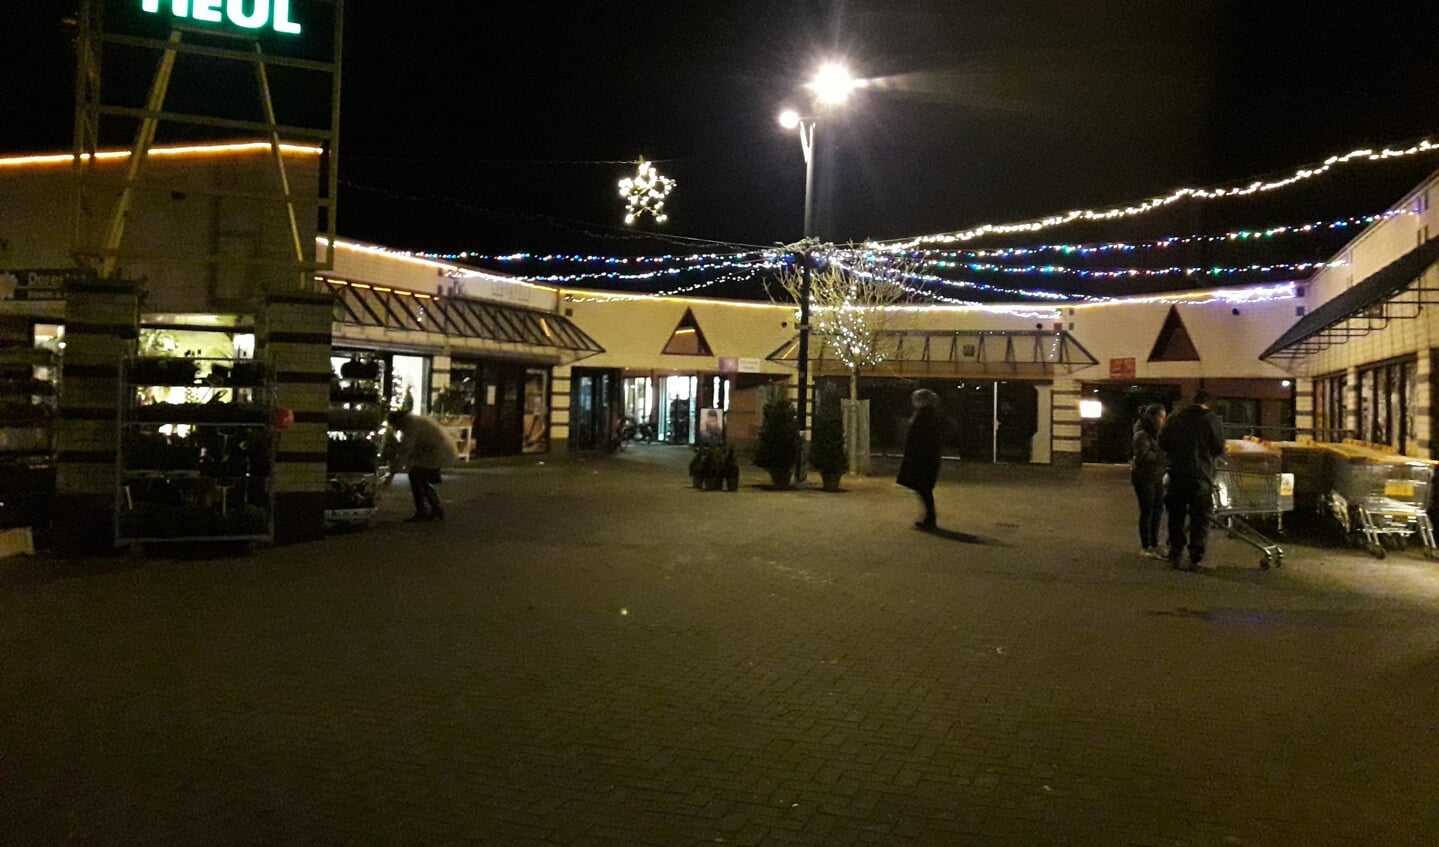 Winkelcentrum De Heul in kerstsfeer